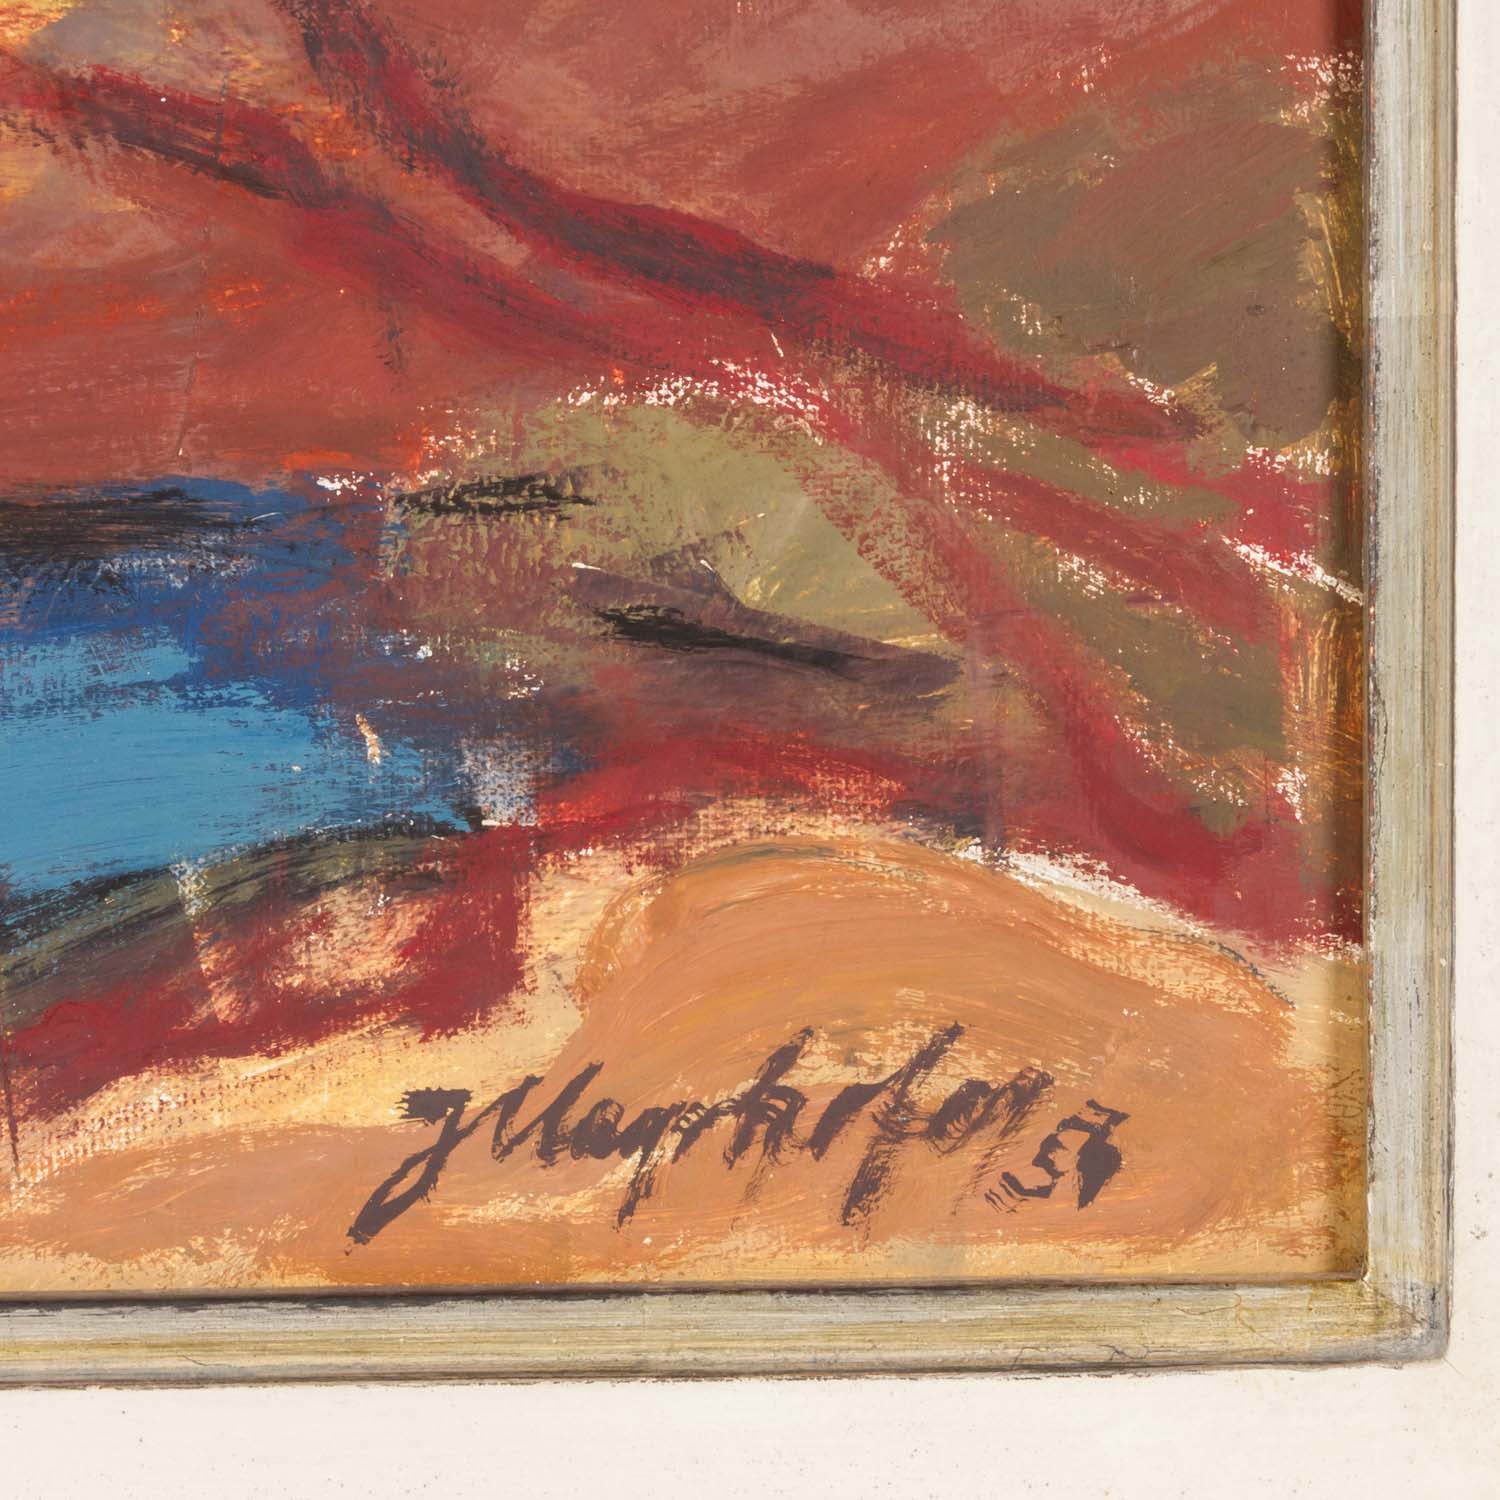 MAYRHOFER, JOSEF (1902 - 1962), "Landschaft", 1954, - Image 3 of 4